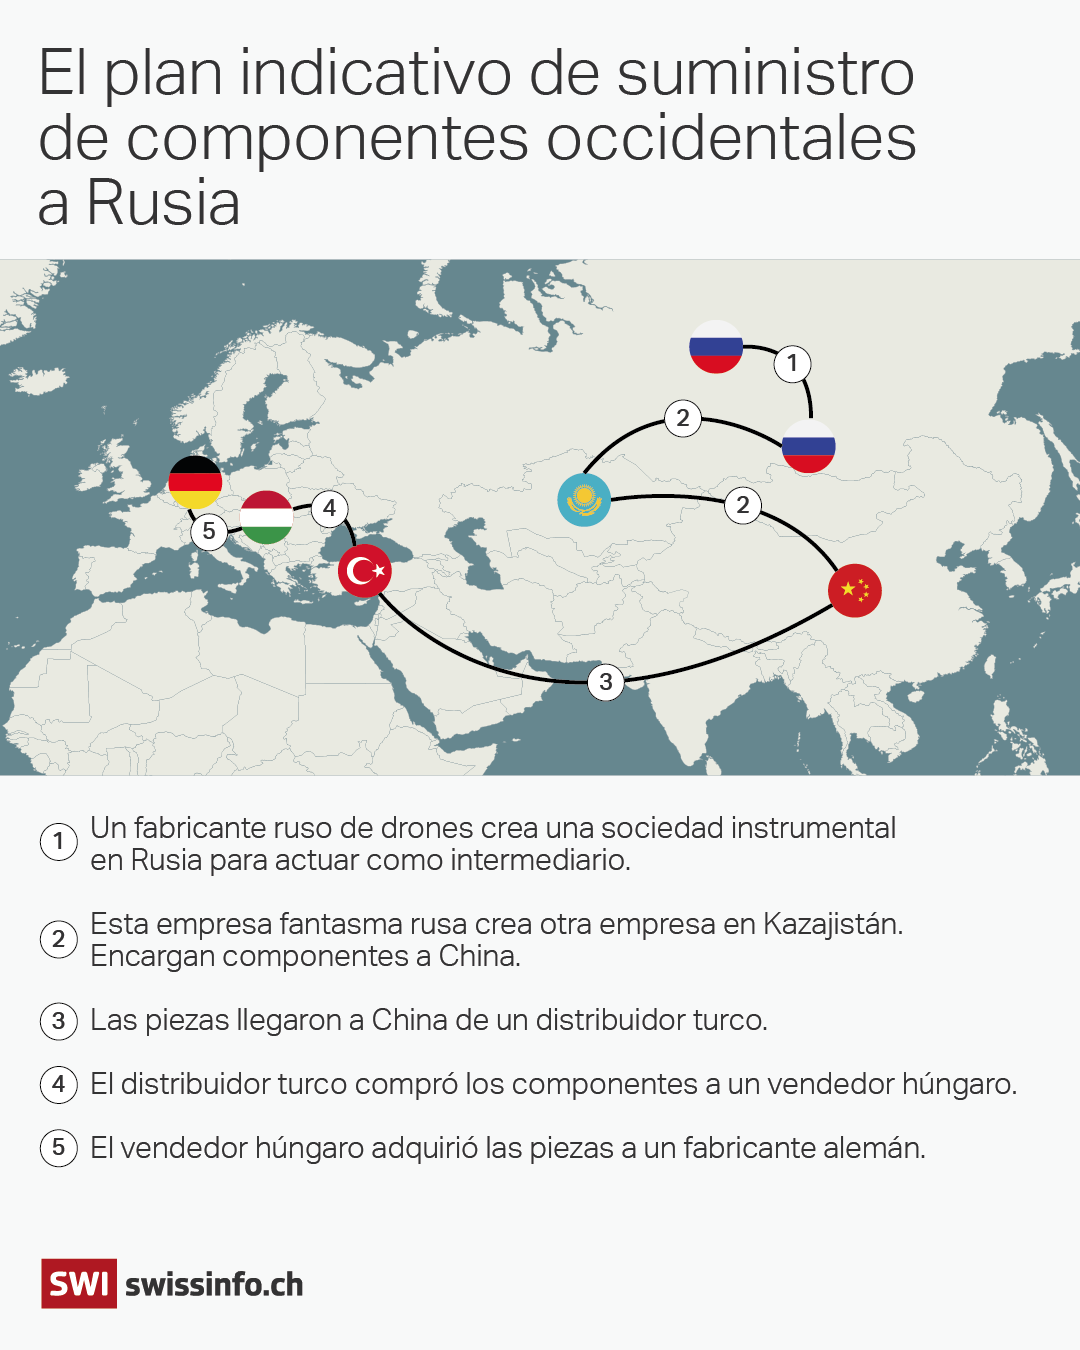 mapa que indica el plan indicativo de suministro de componentes occidentales a Rusia